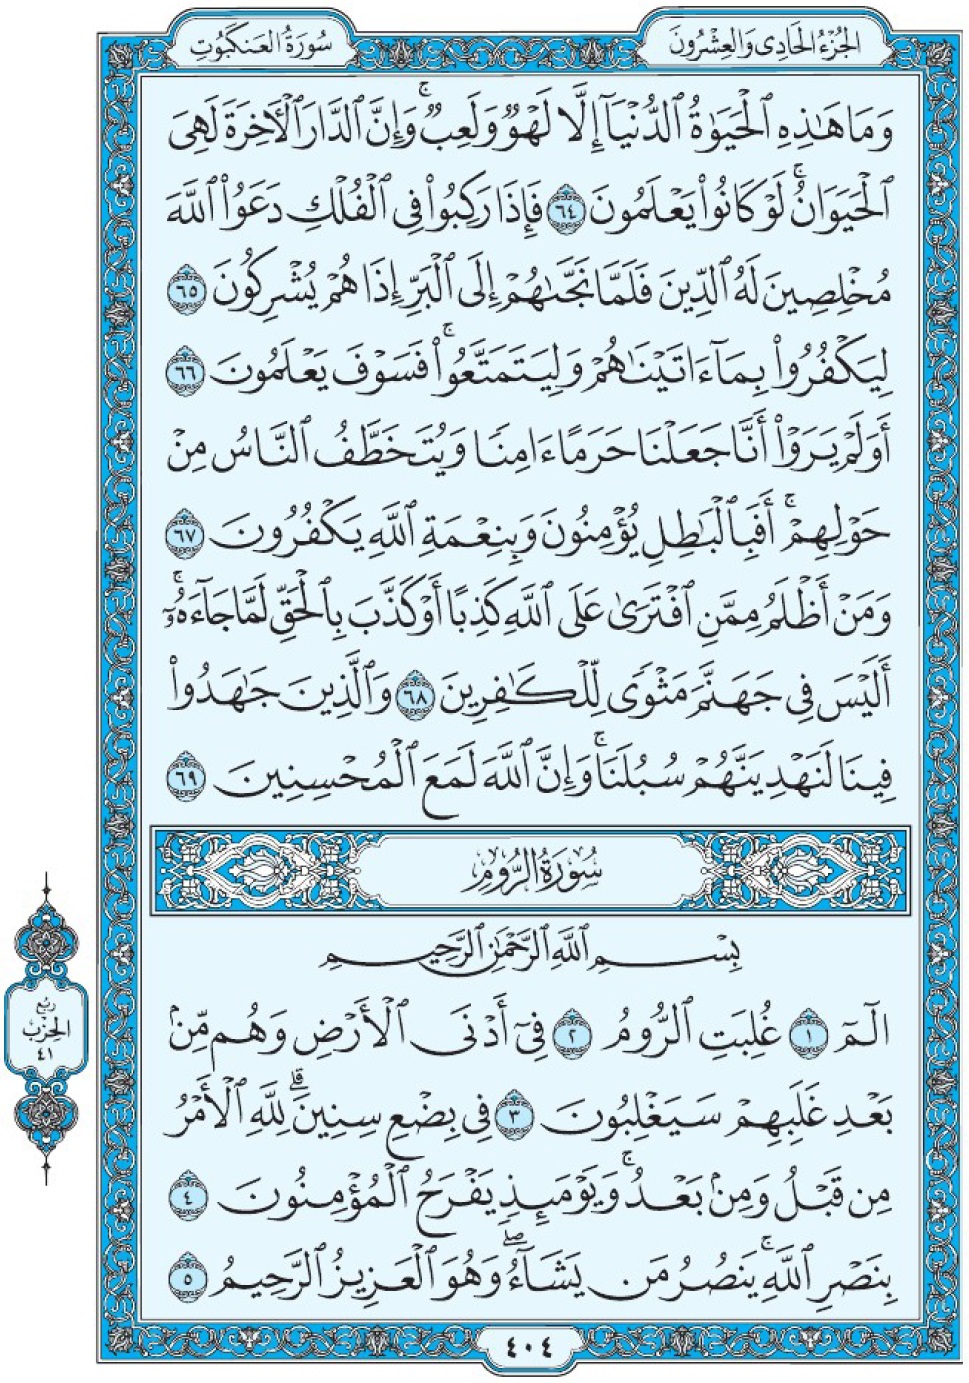 Коран Мединский мусхаф страница 404, сура 30 Ар-Рум سورة ٣٠ الروم 